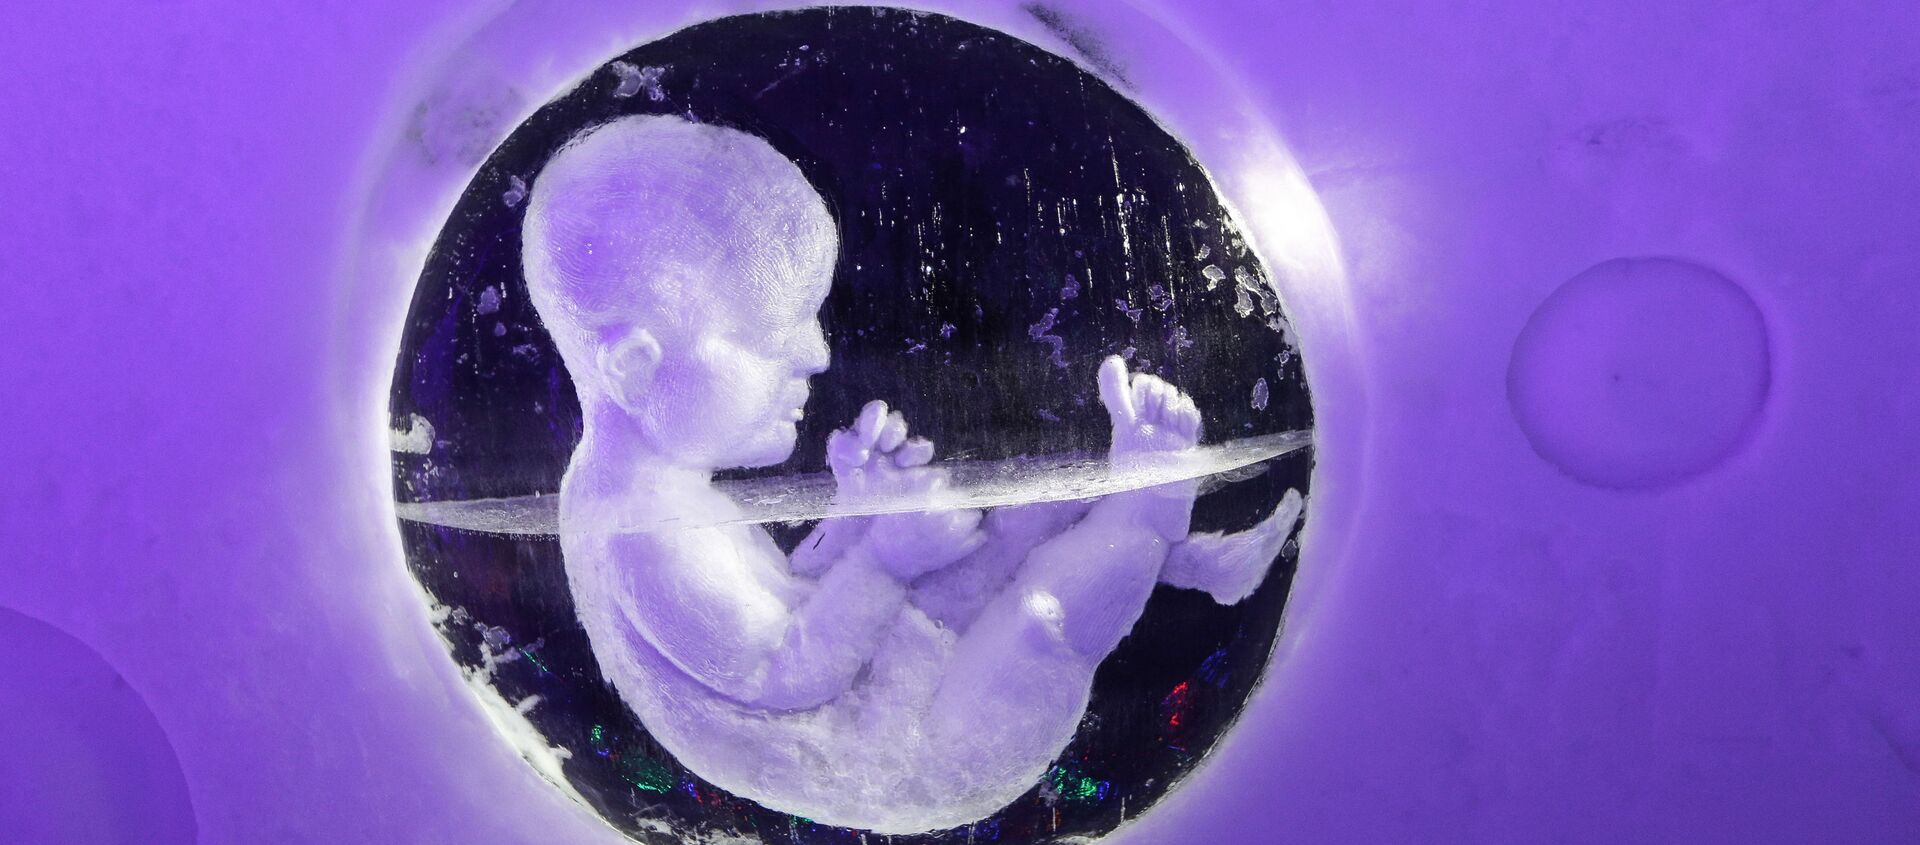 Эмбрион, архивное фото - Sputnik Узбекистан, 1920, 19.04.2019